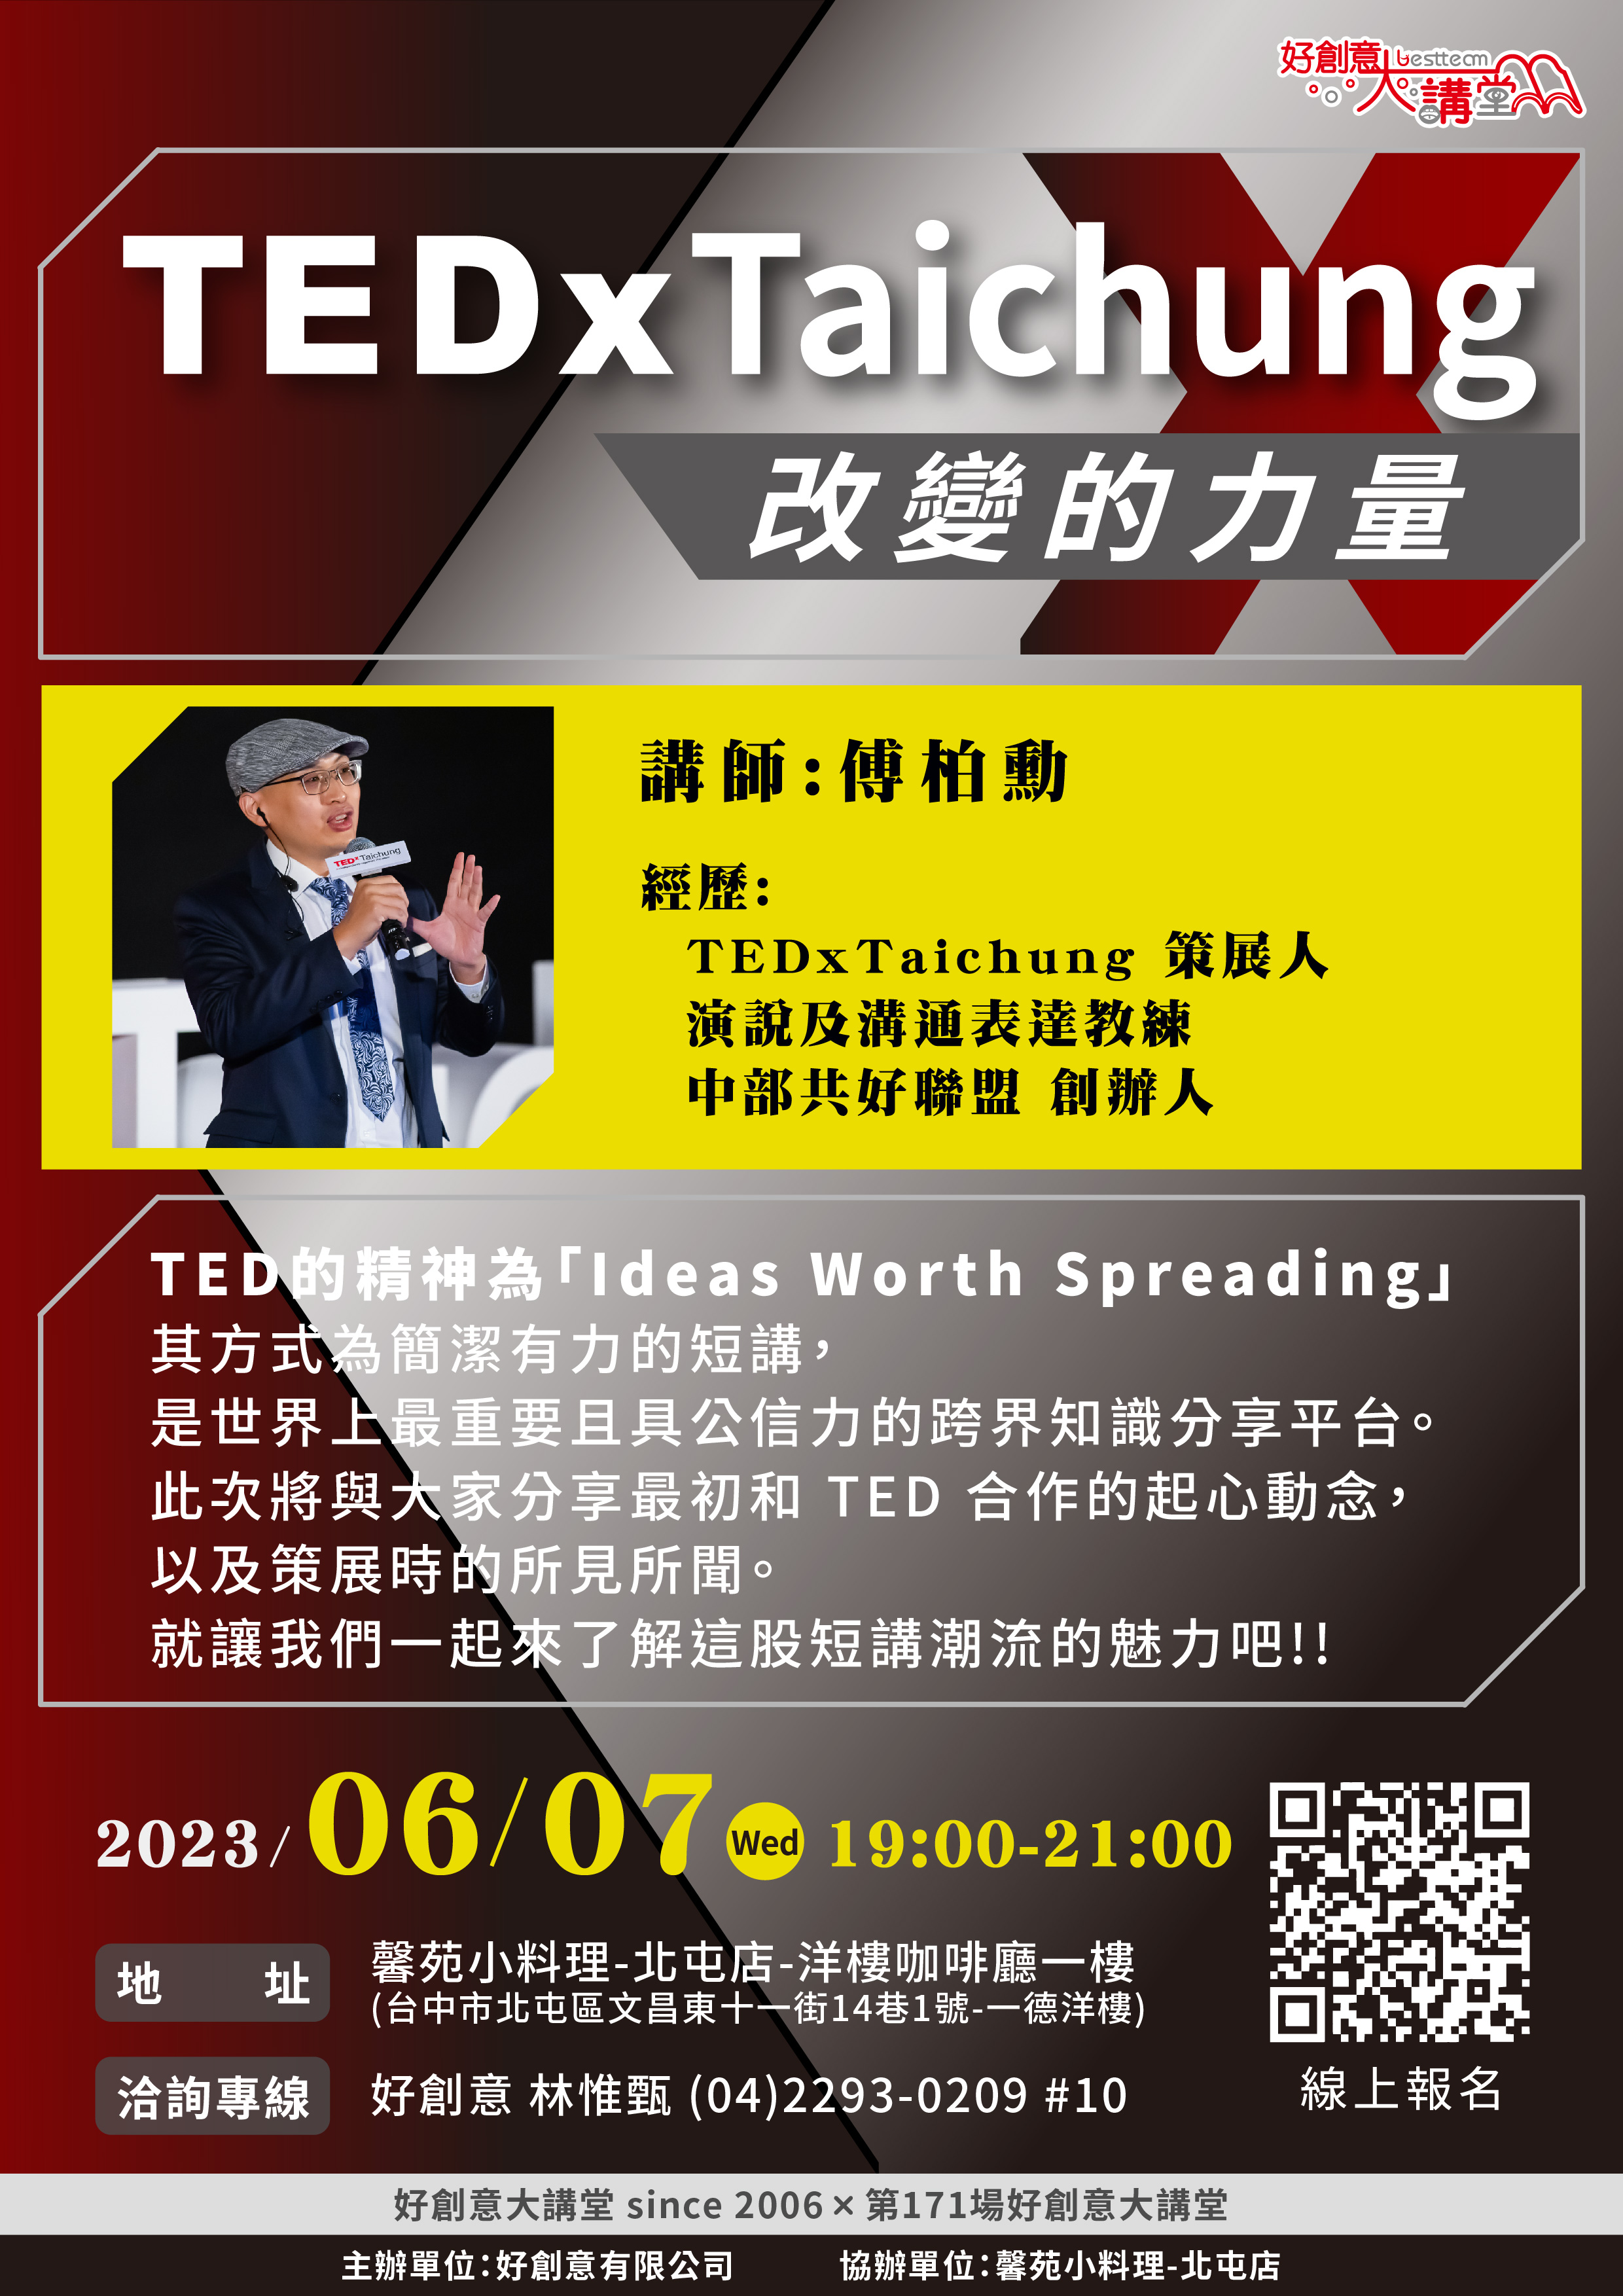 2023年6月份好創意大講堂  since2006 本場次為第171場  ¥  主題~ TEDxTaichung，改變的力量